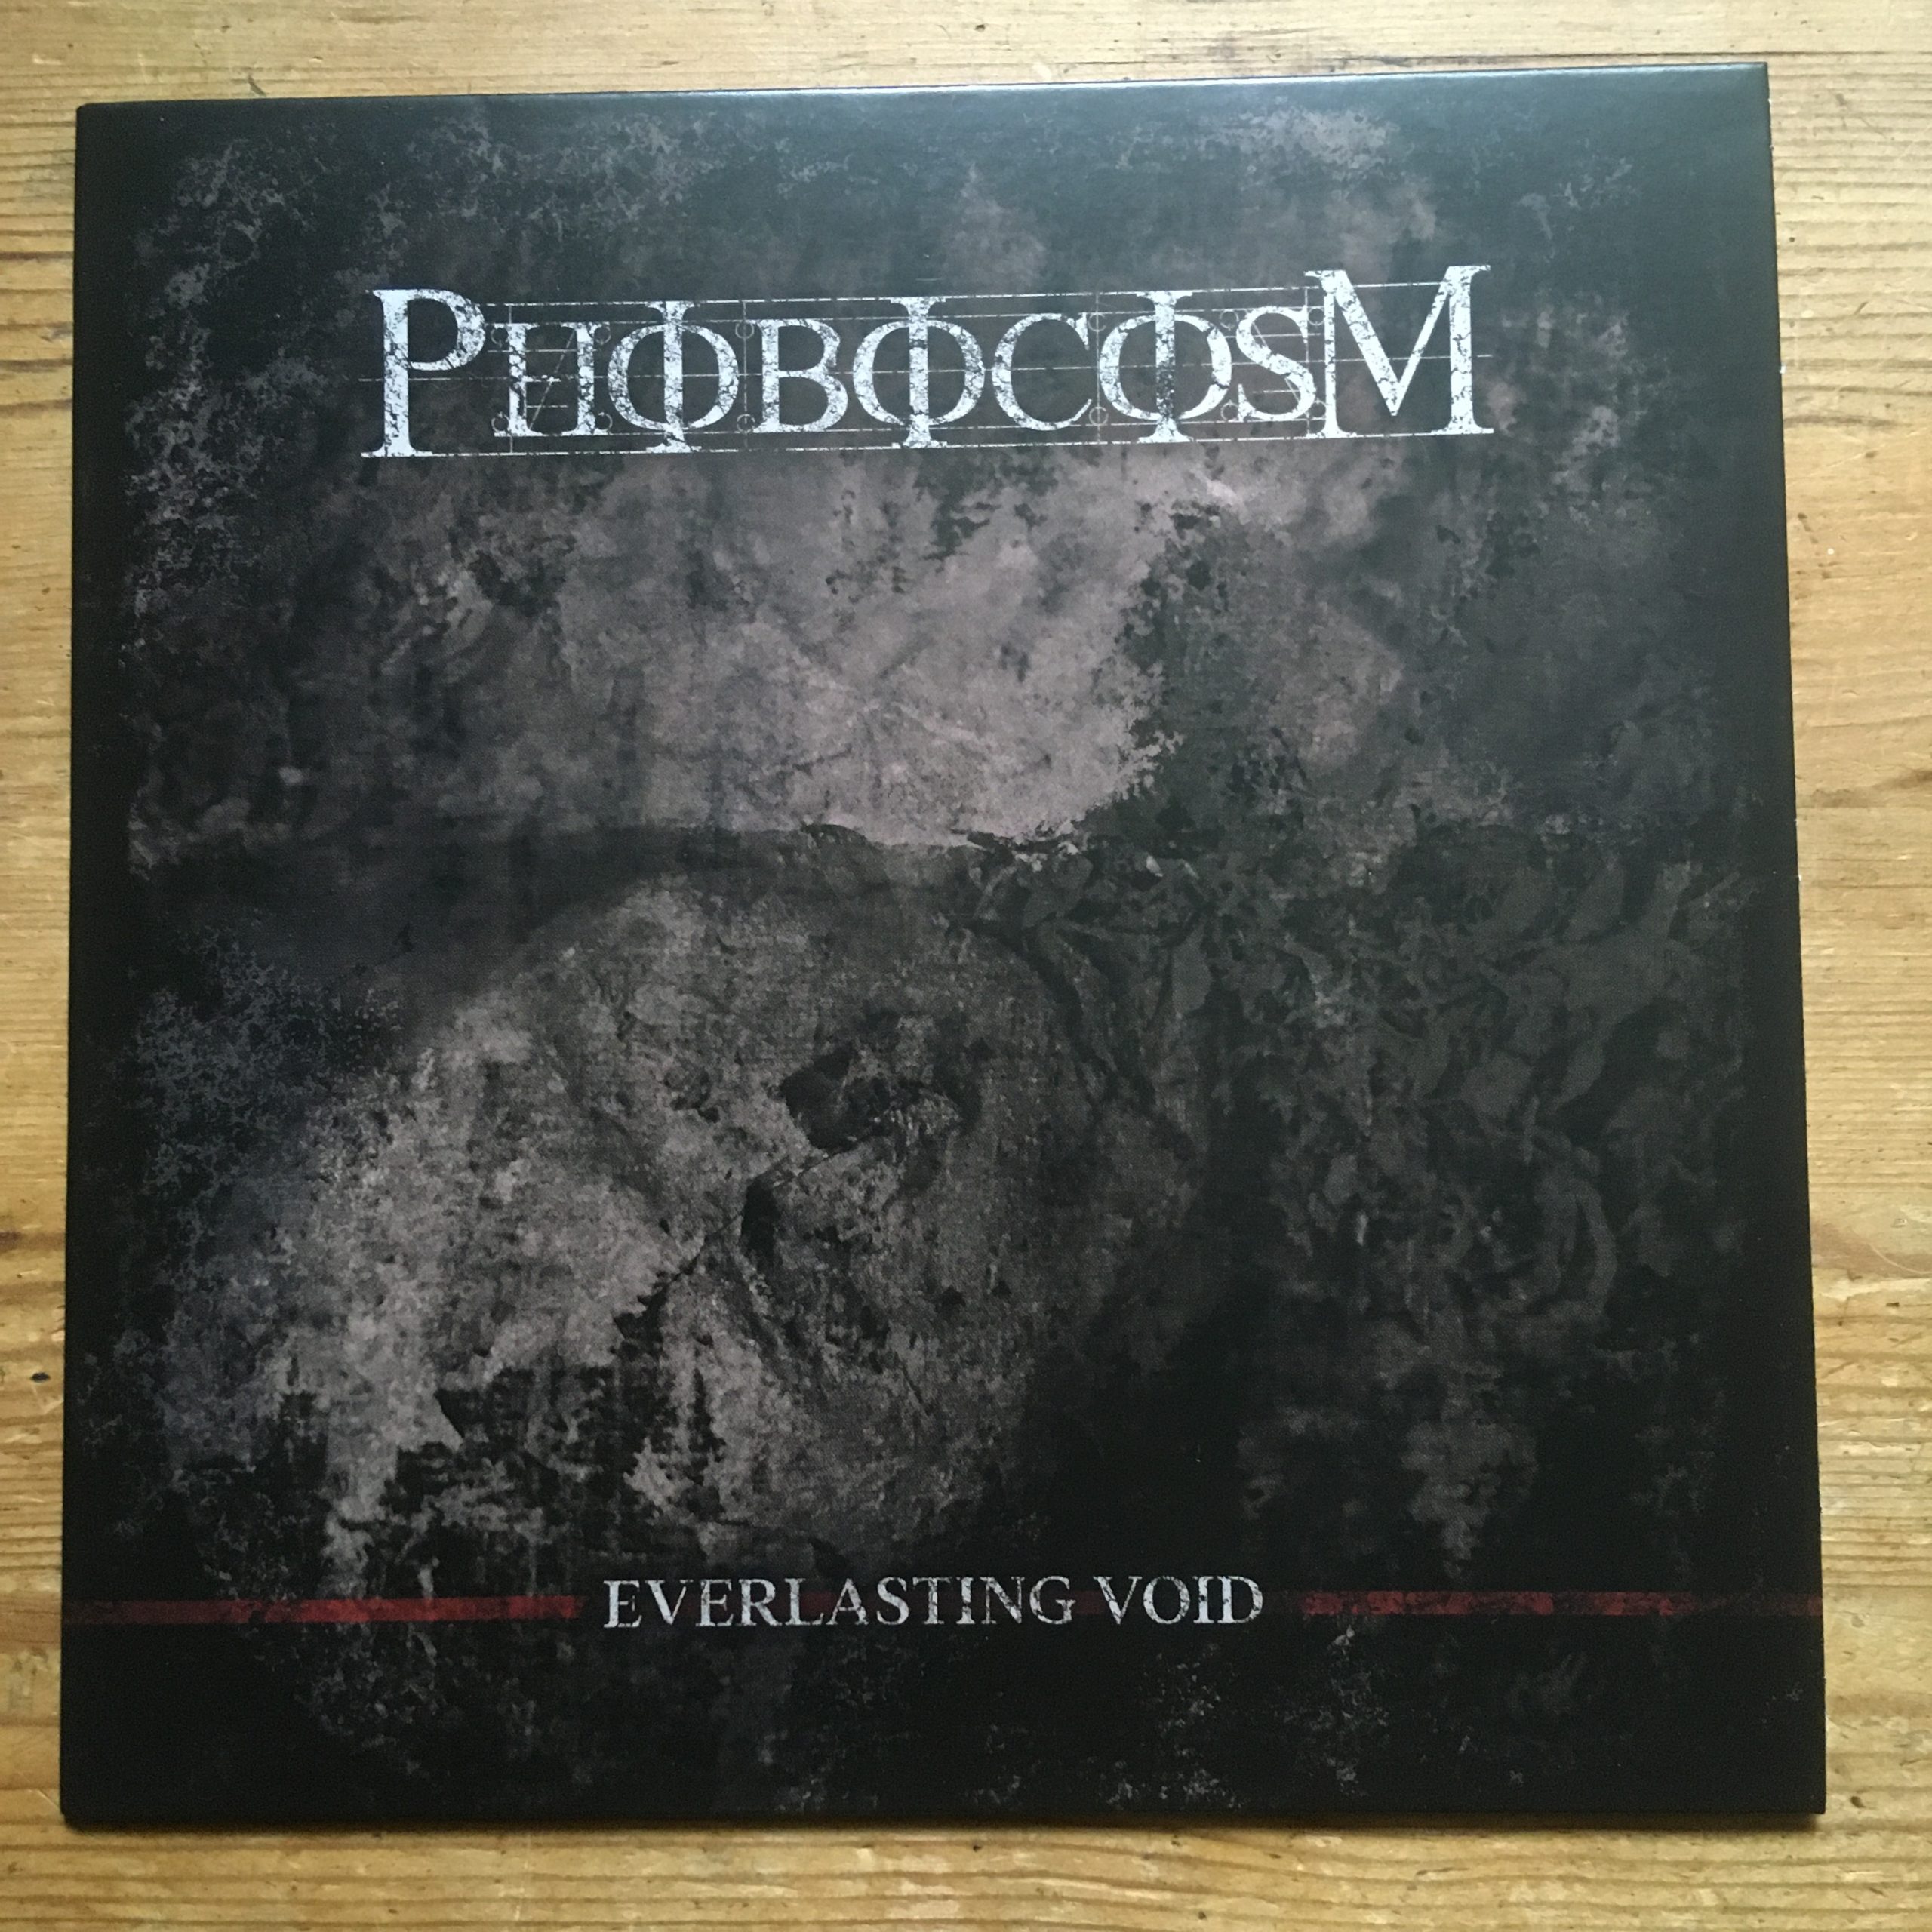 Photo of the Phobocosm - "Everlasting Void" EP (Black vinyl)